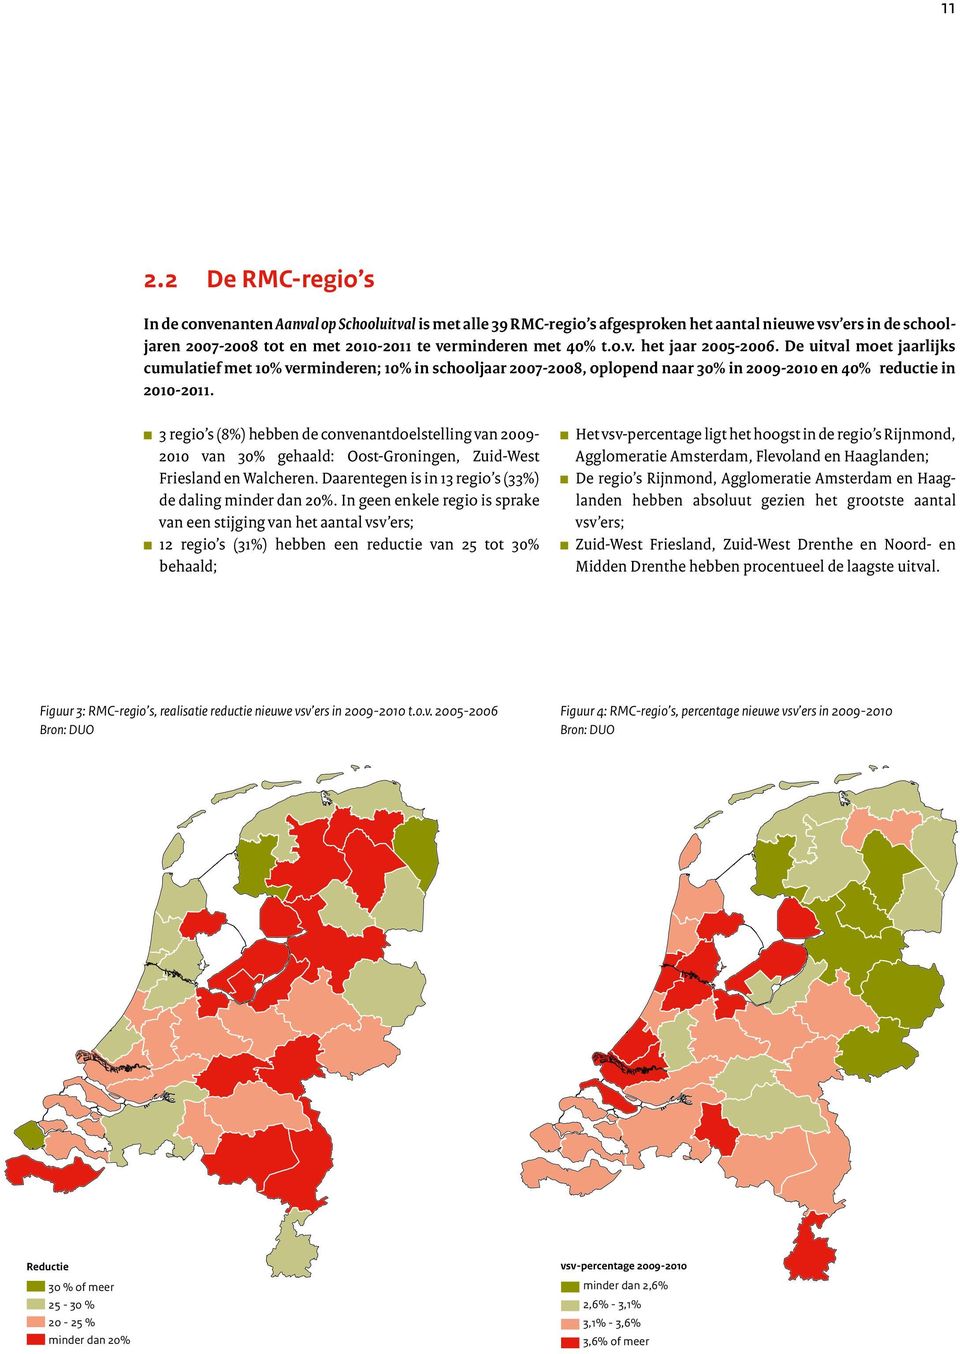 3 regio s (8%) hebben de convenantdoelstelling van 2009-2010 van 30% gehaald: Oost-Groningen, Zuid-West Friesland en Walcheren. Daarentegen is in 13 regio s (33%) de daling minder dan 20%.